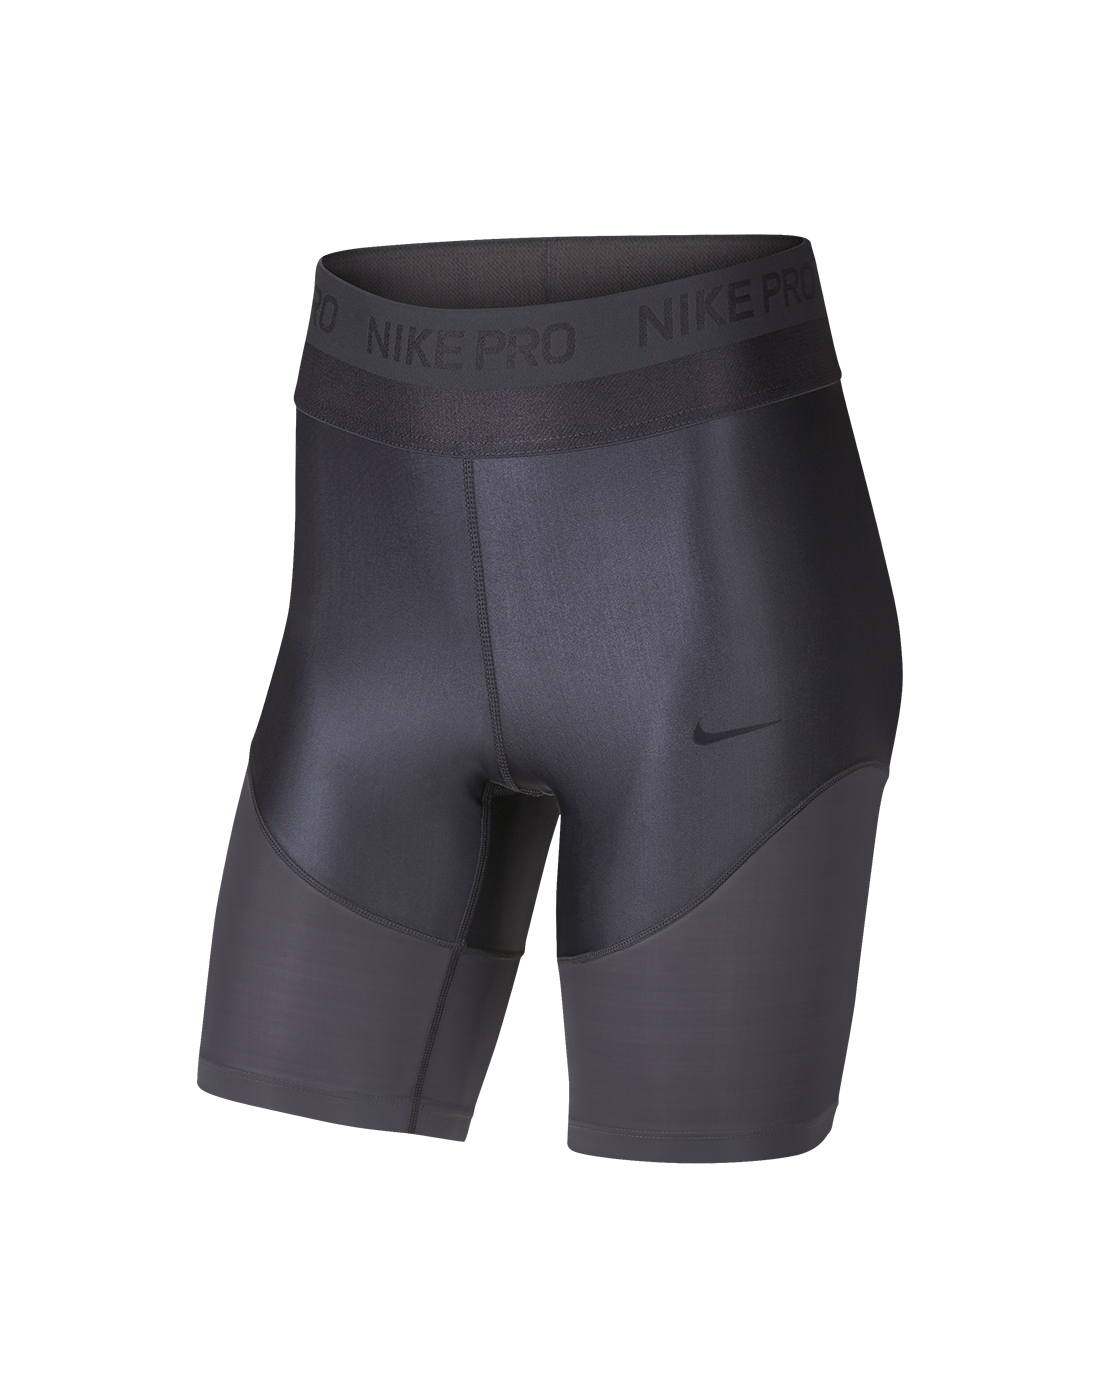 women's nike pro 8 inch shorts